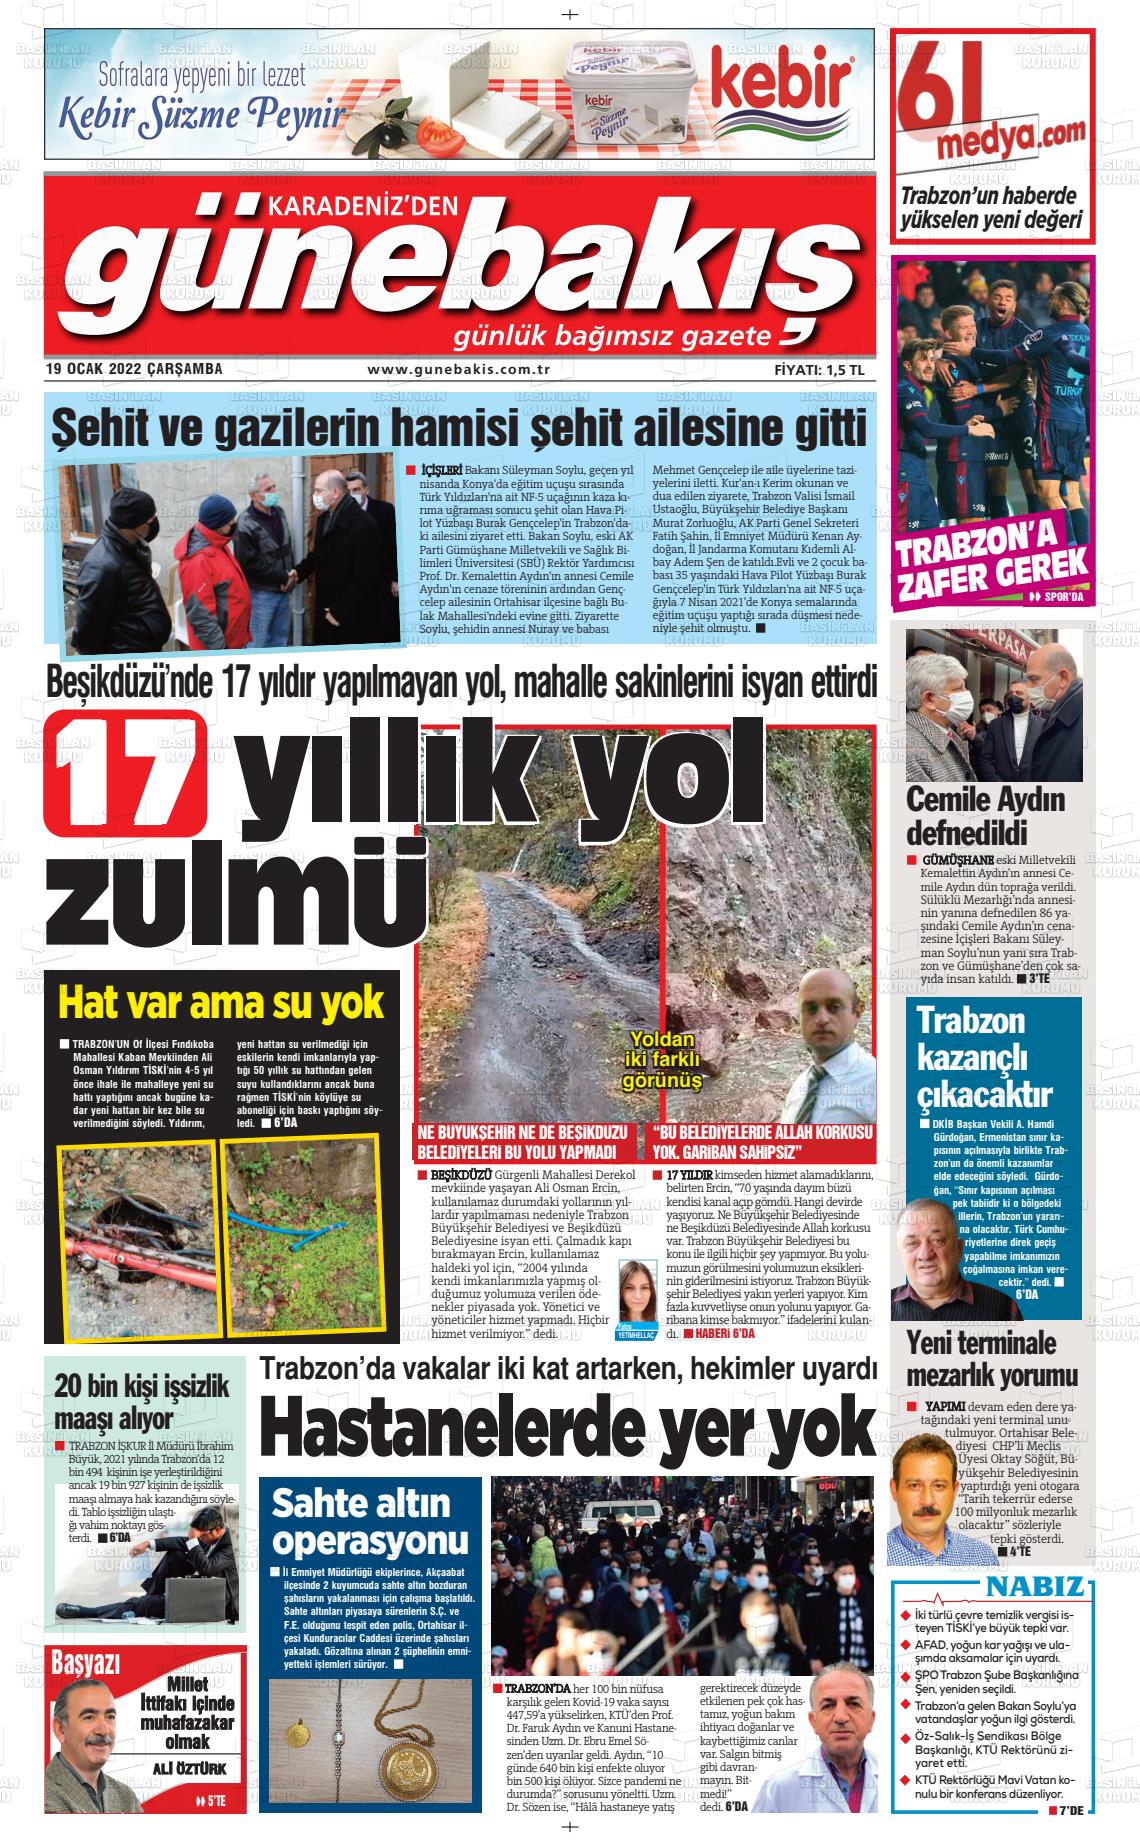 19 Ocak 2022 Günebakış Gazete Manşeti